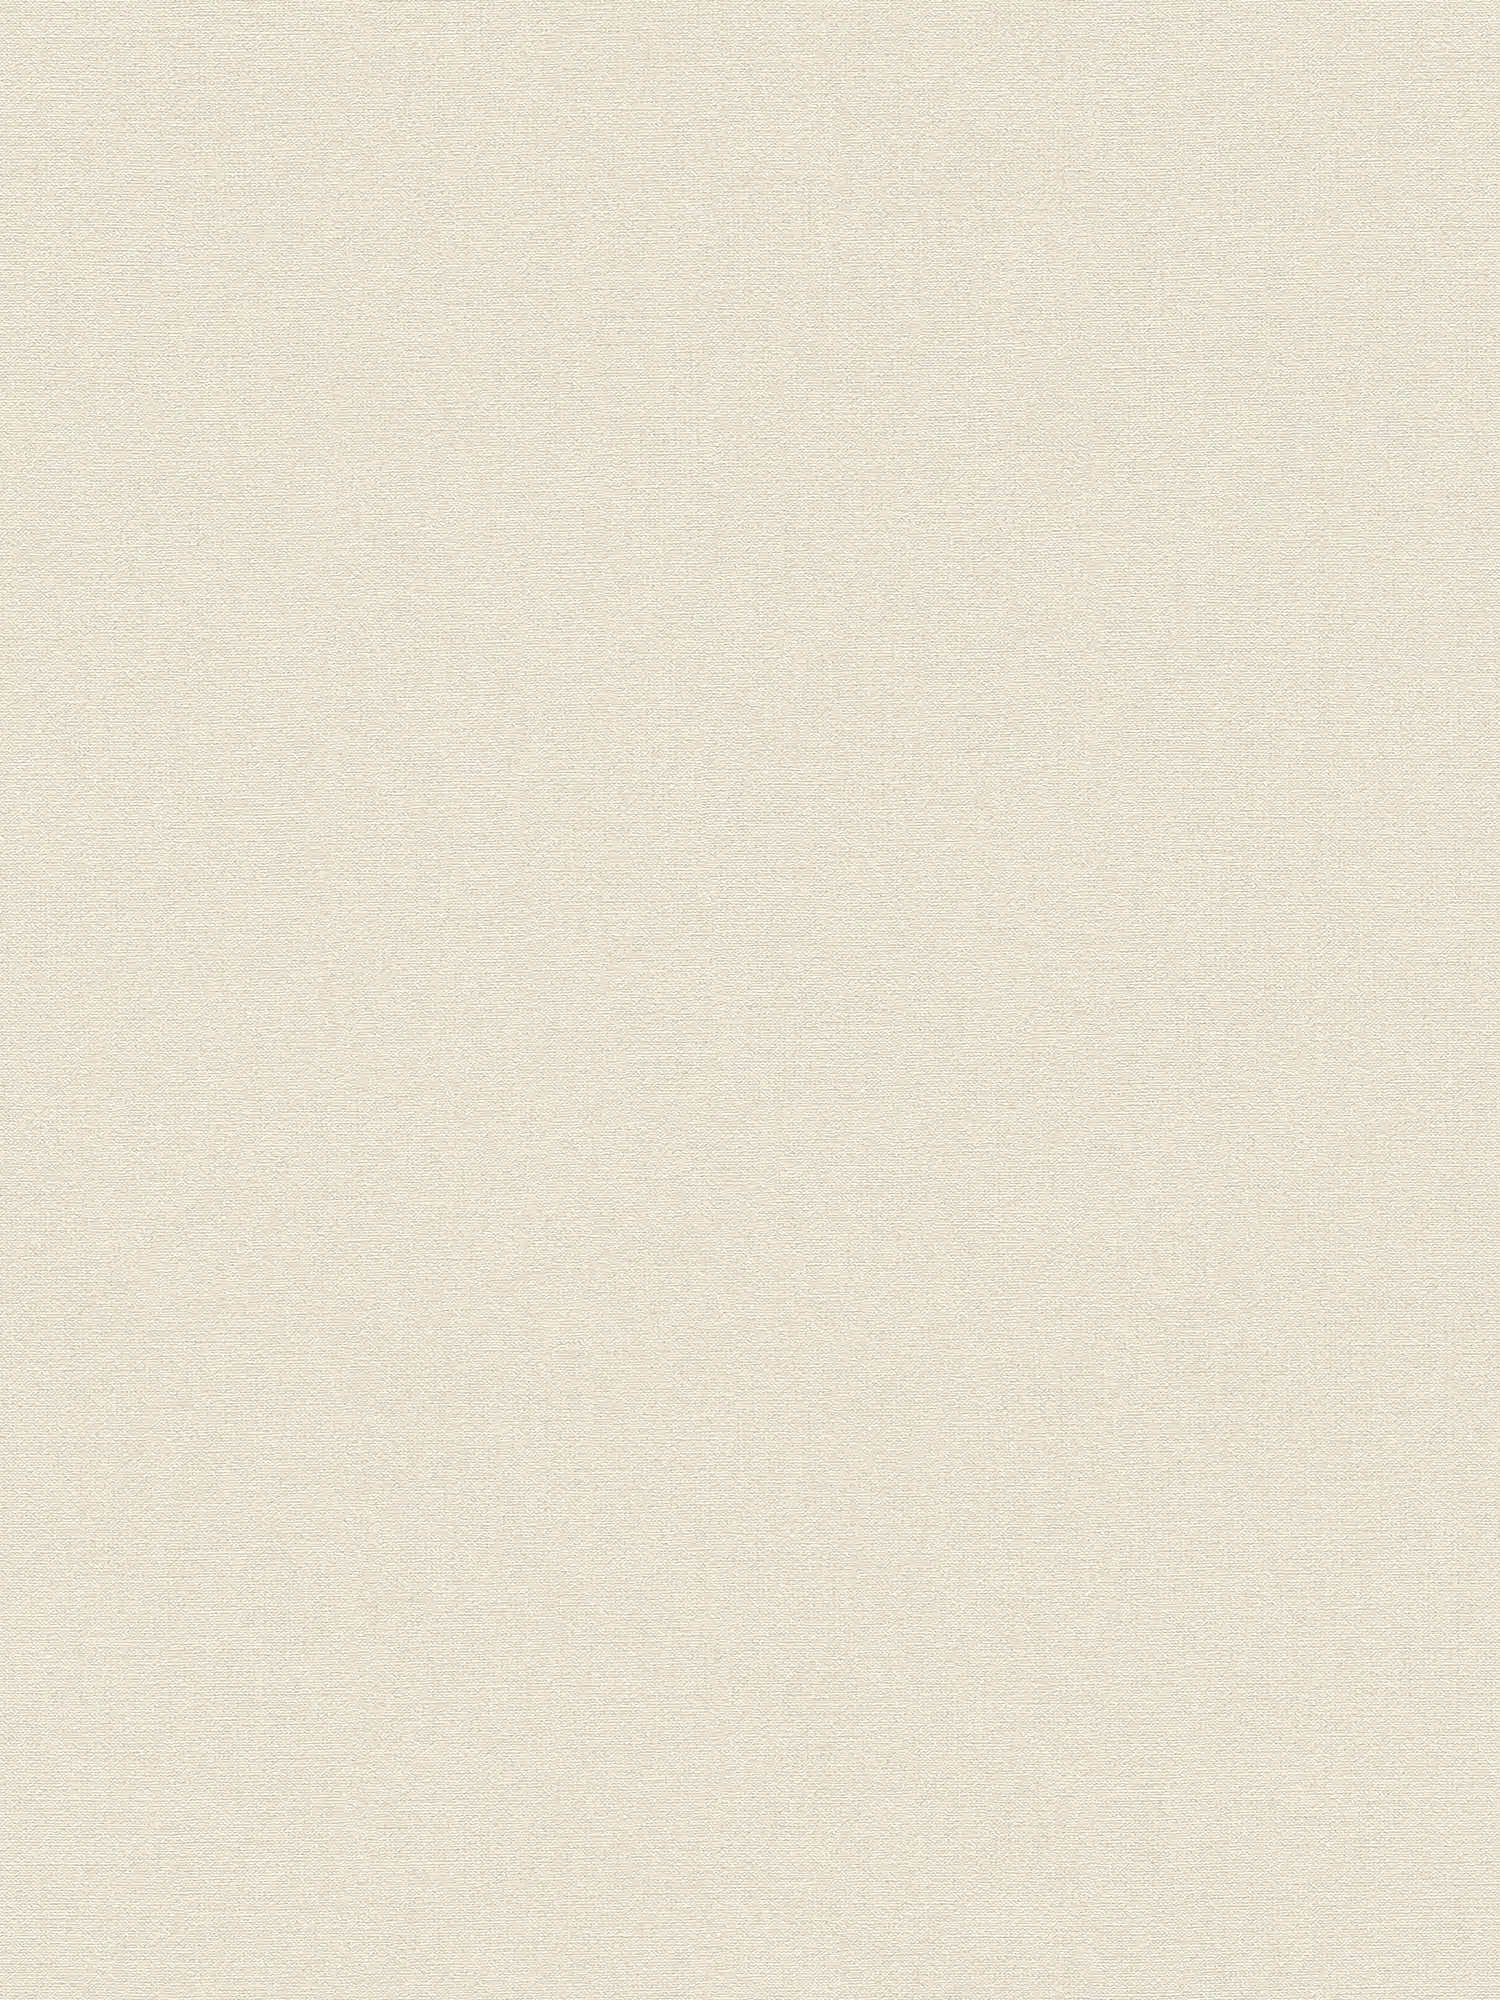 Papier peint uni sans PVC, aspect lin - beige, blanc
